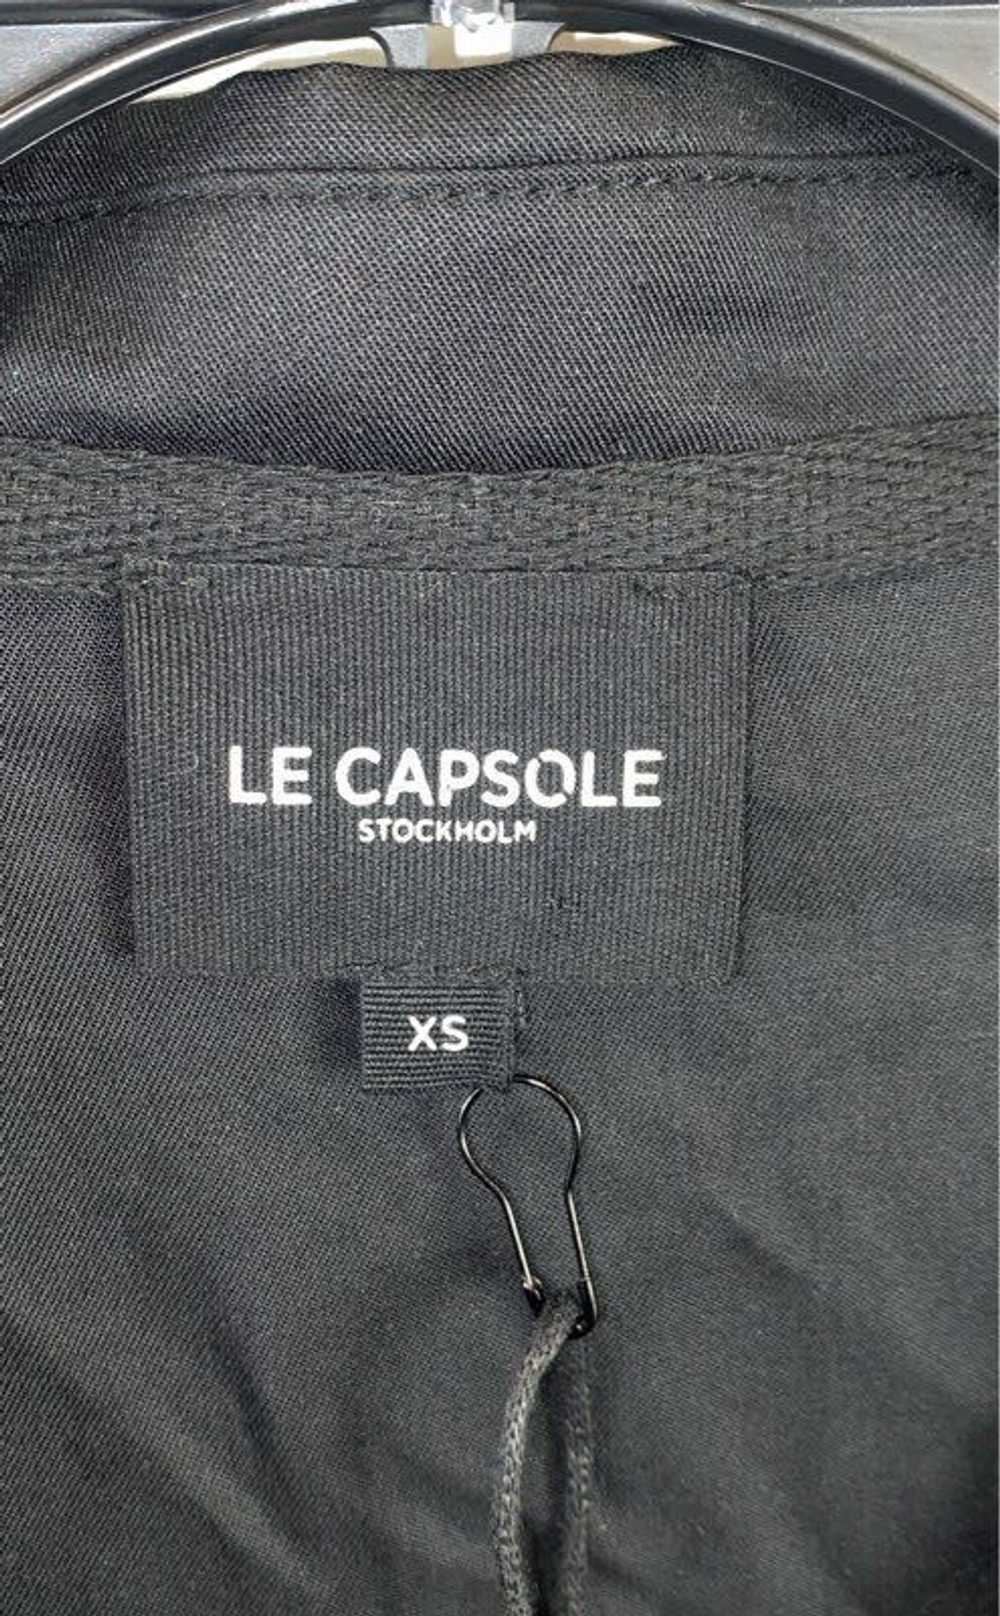 Le Capsole Black Jacket - Size X Small - image 3